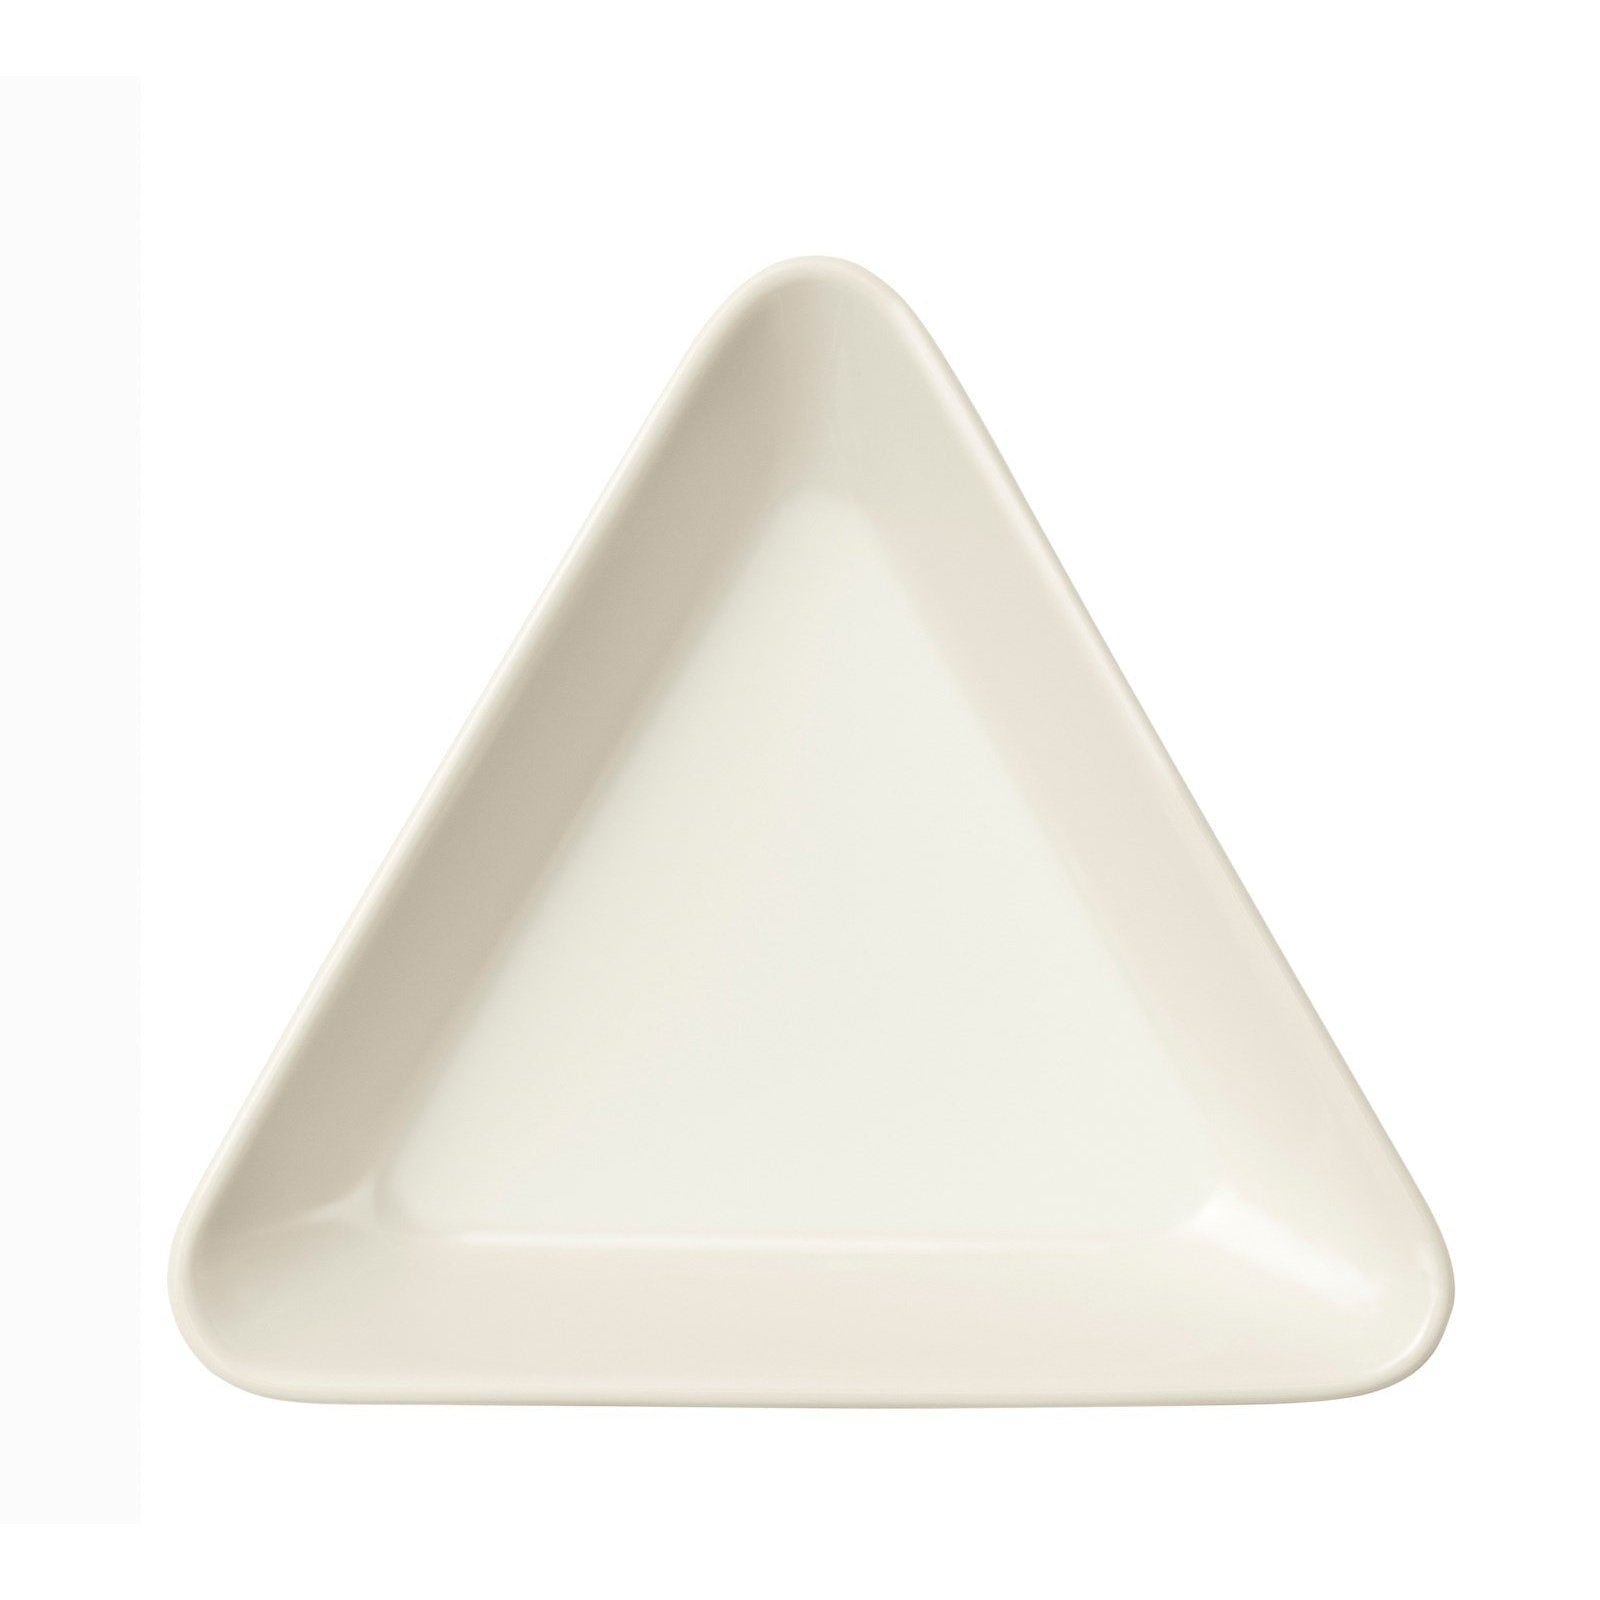 Iittala TEEMA Bowl blanc, triangulaire